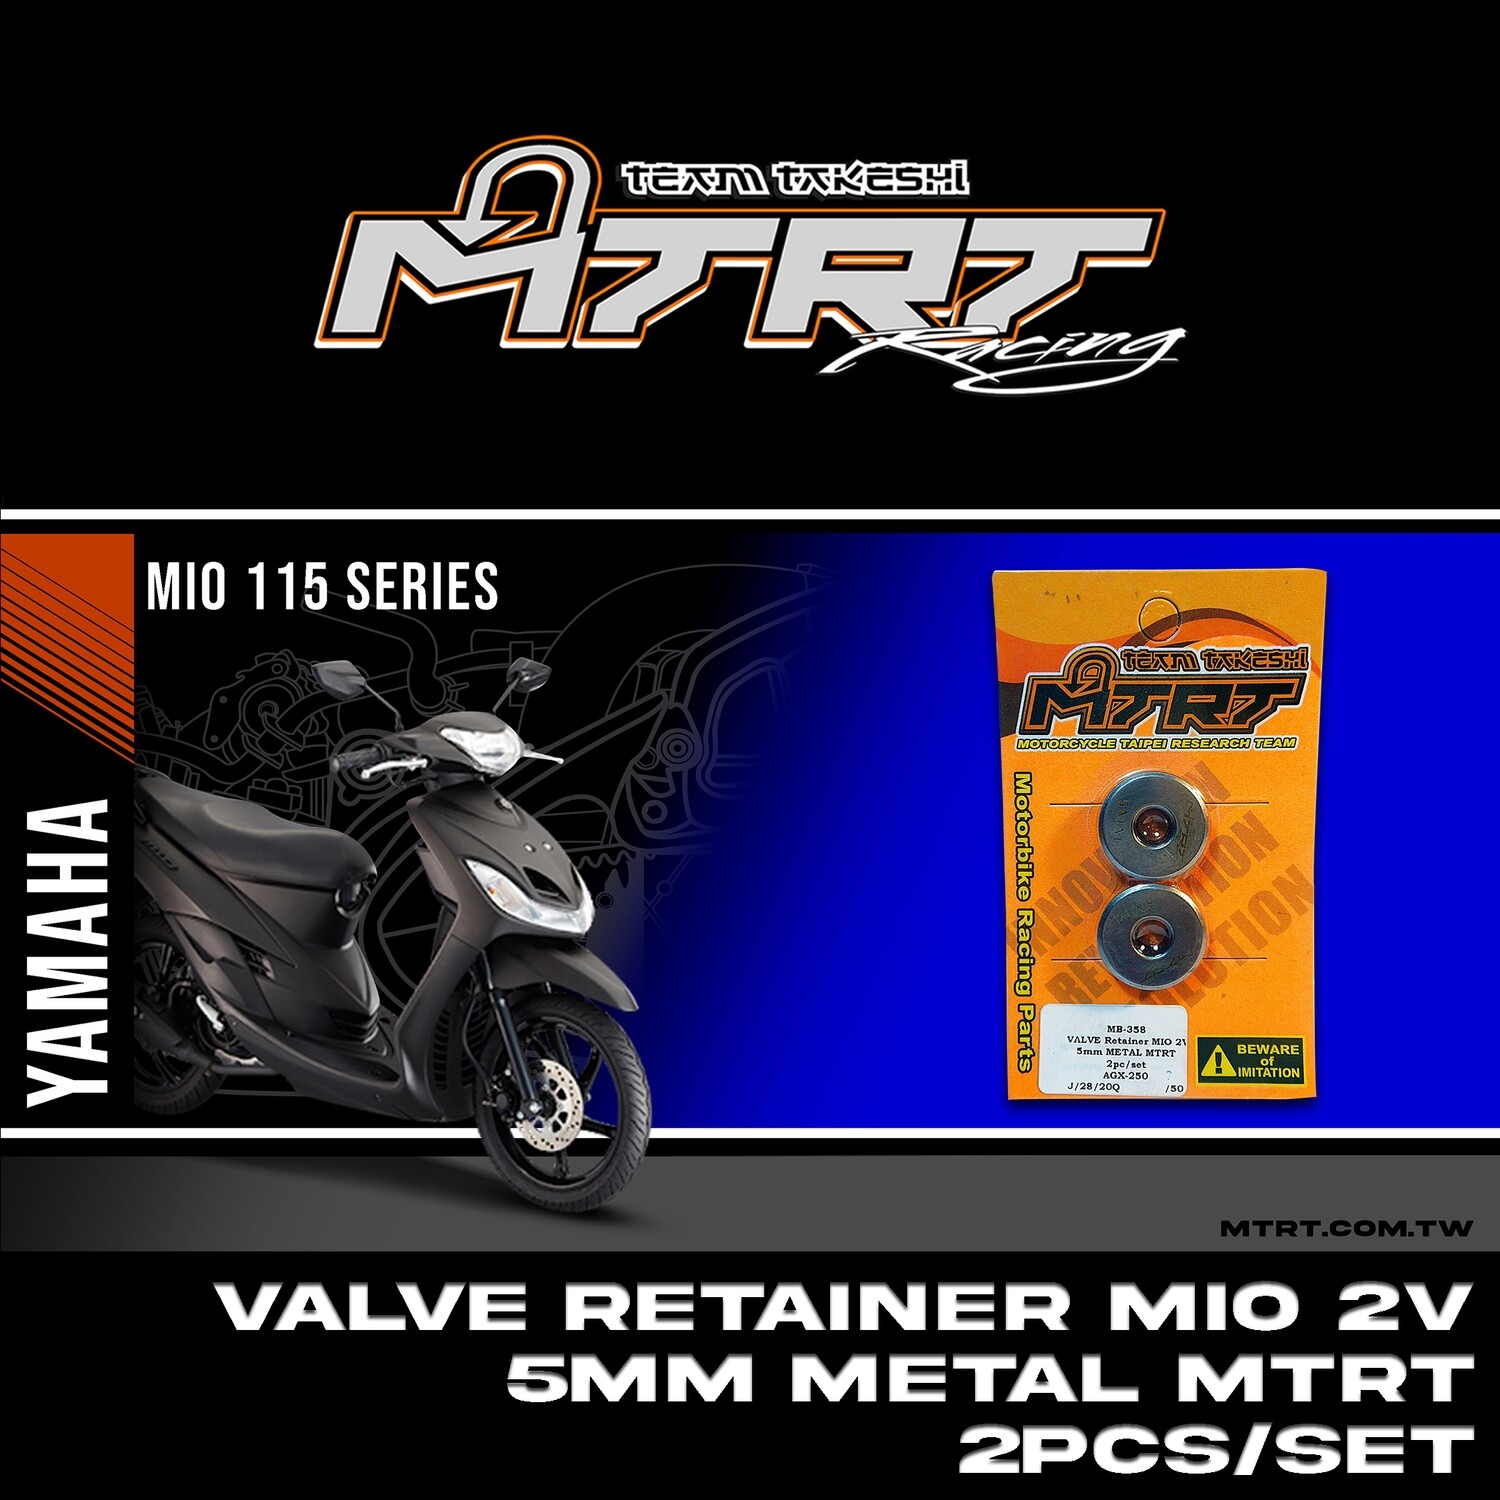 VALVE Retainer MIO 2V 5mm METAL MTRT 2pc/set